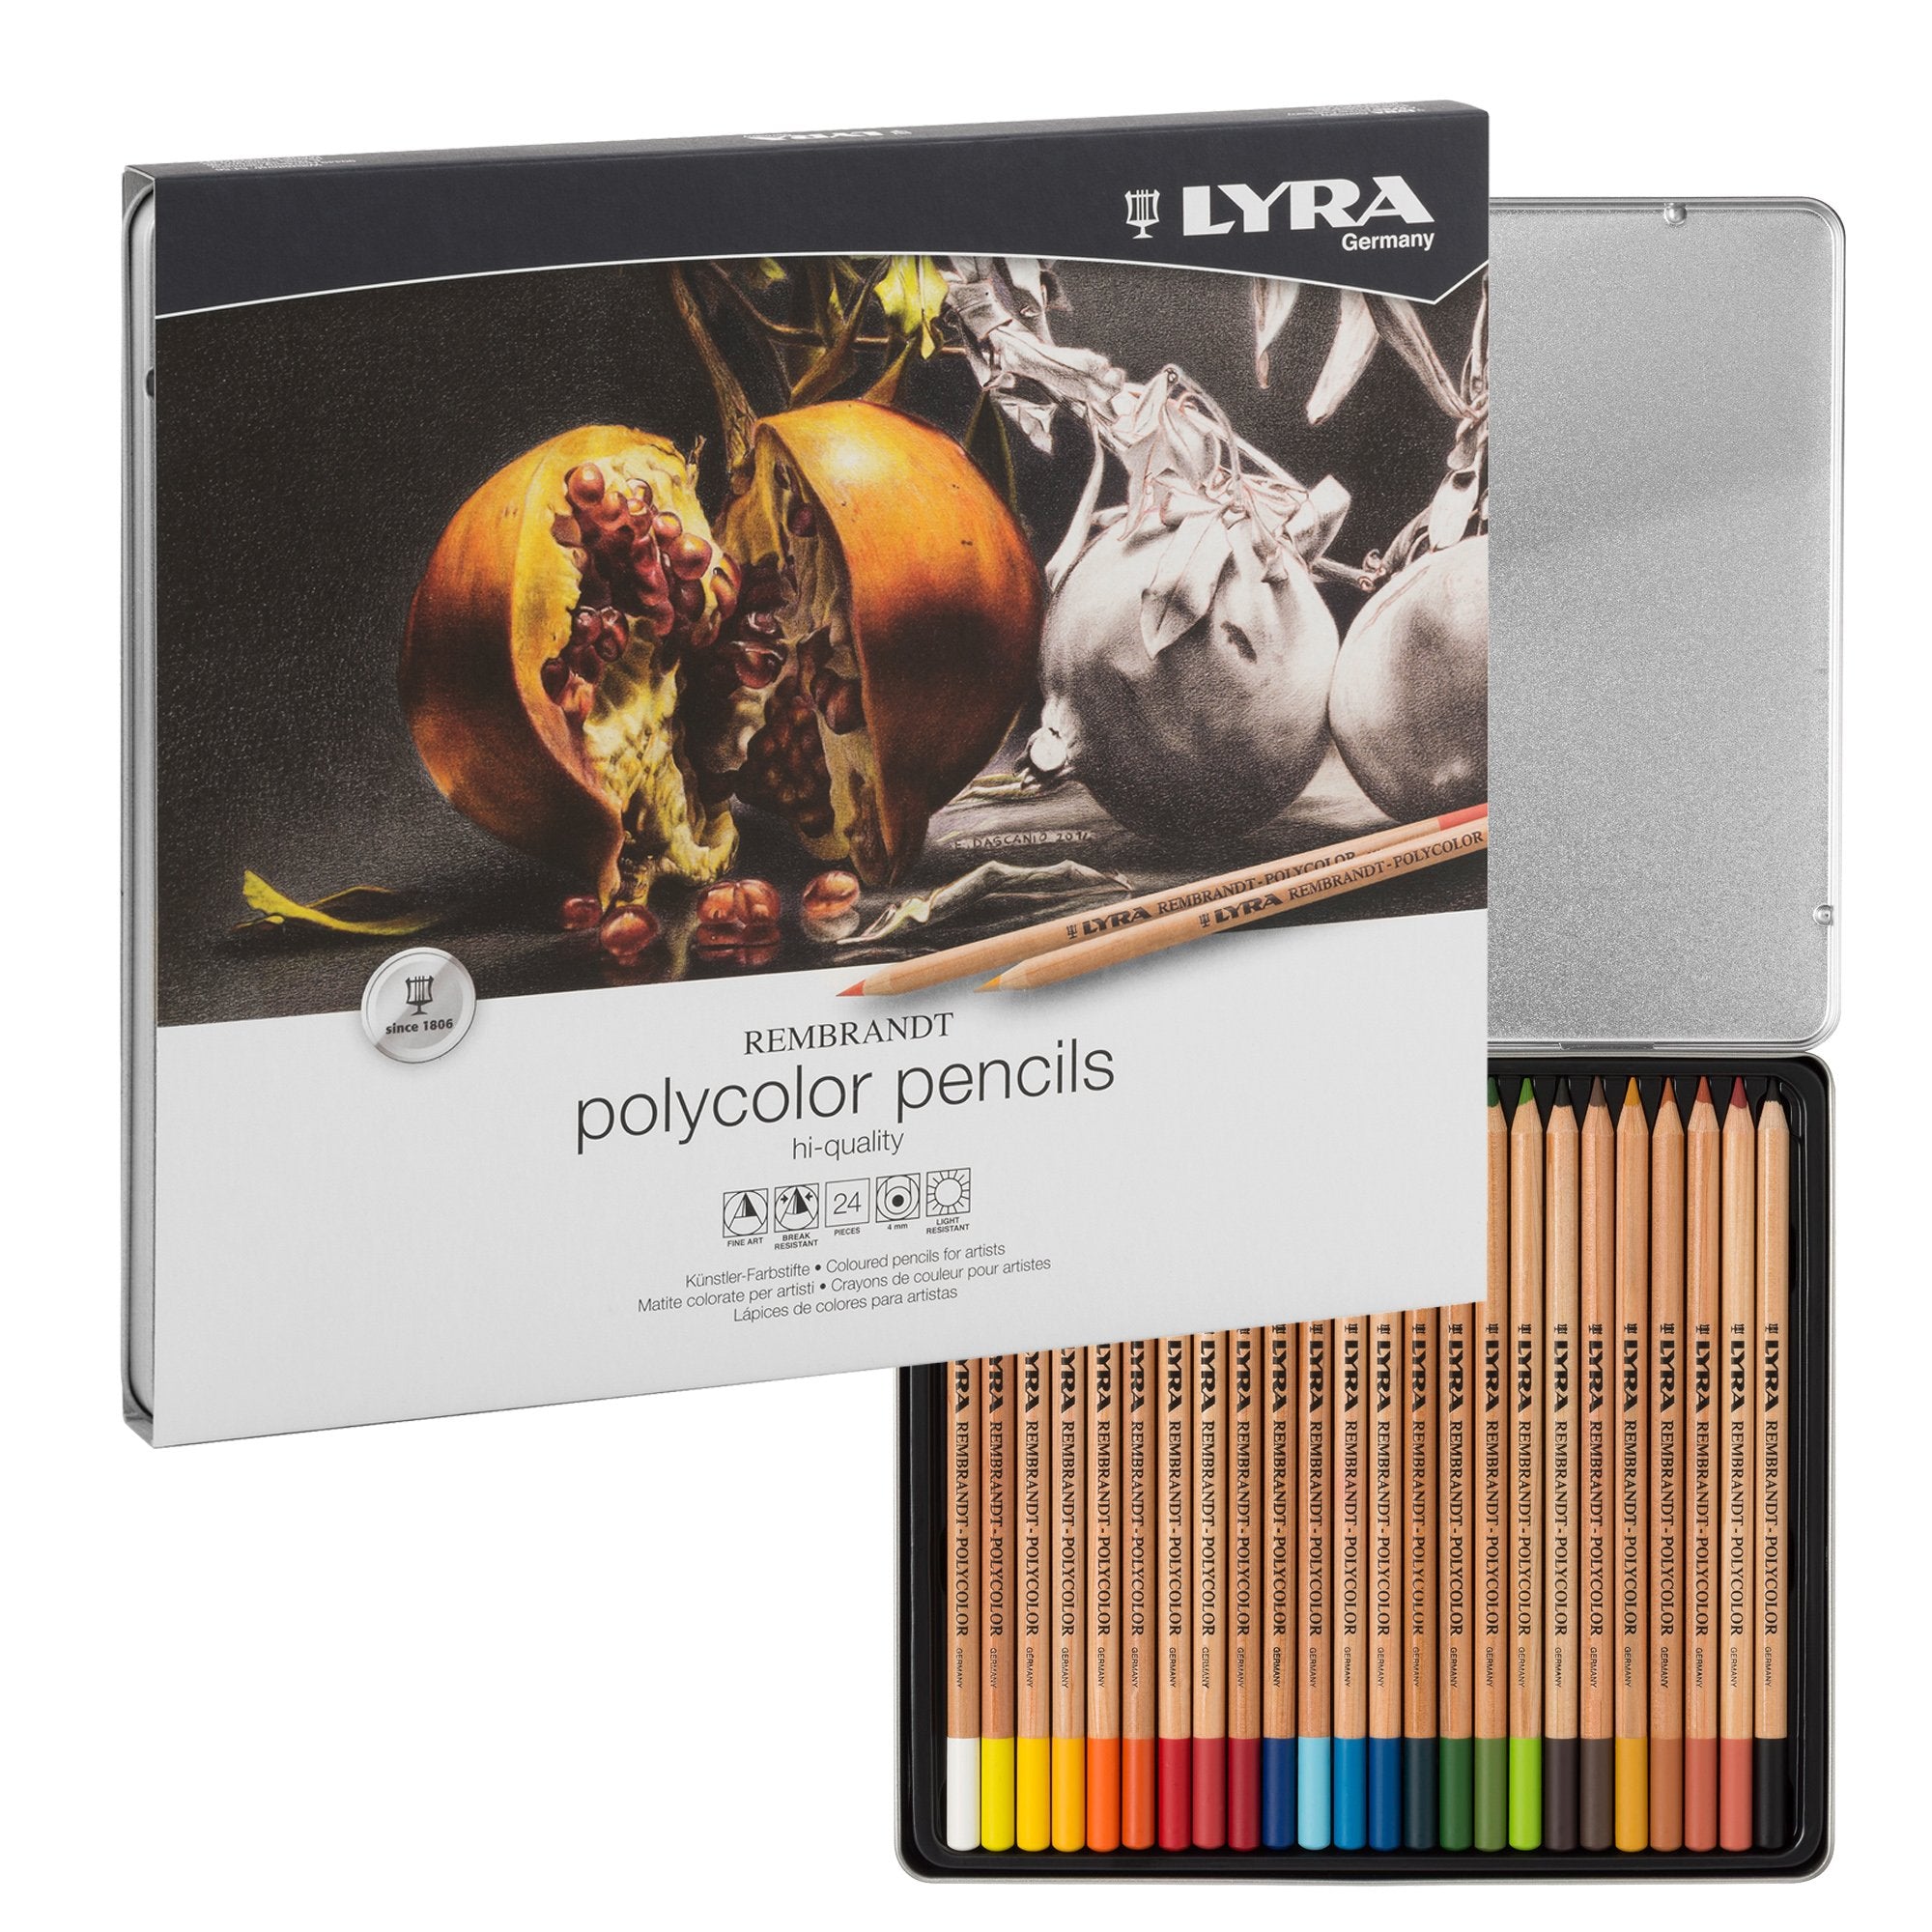 lyra-l2001240-astuccio-metallo-24-pastelli-rembrandt-polycolor